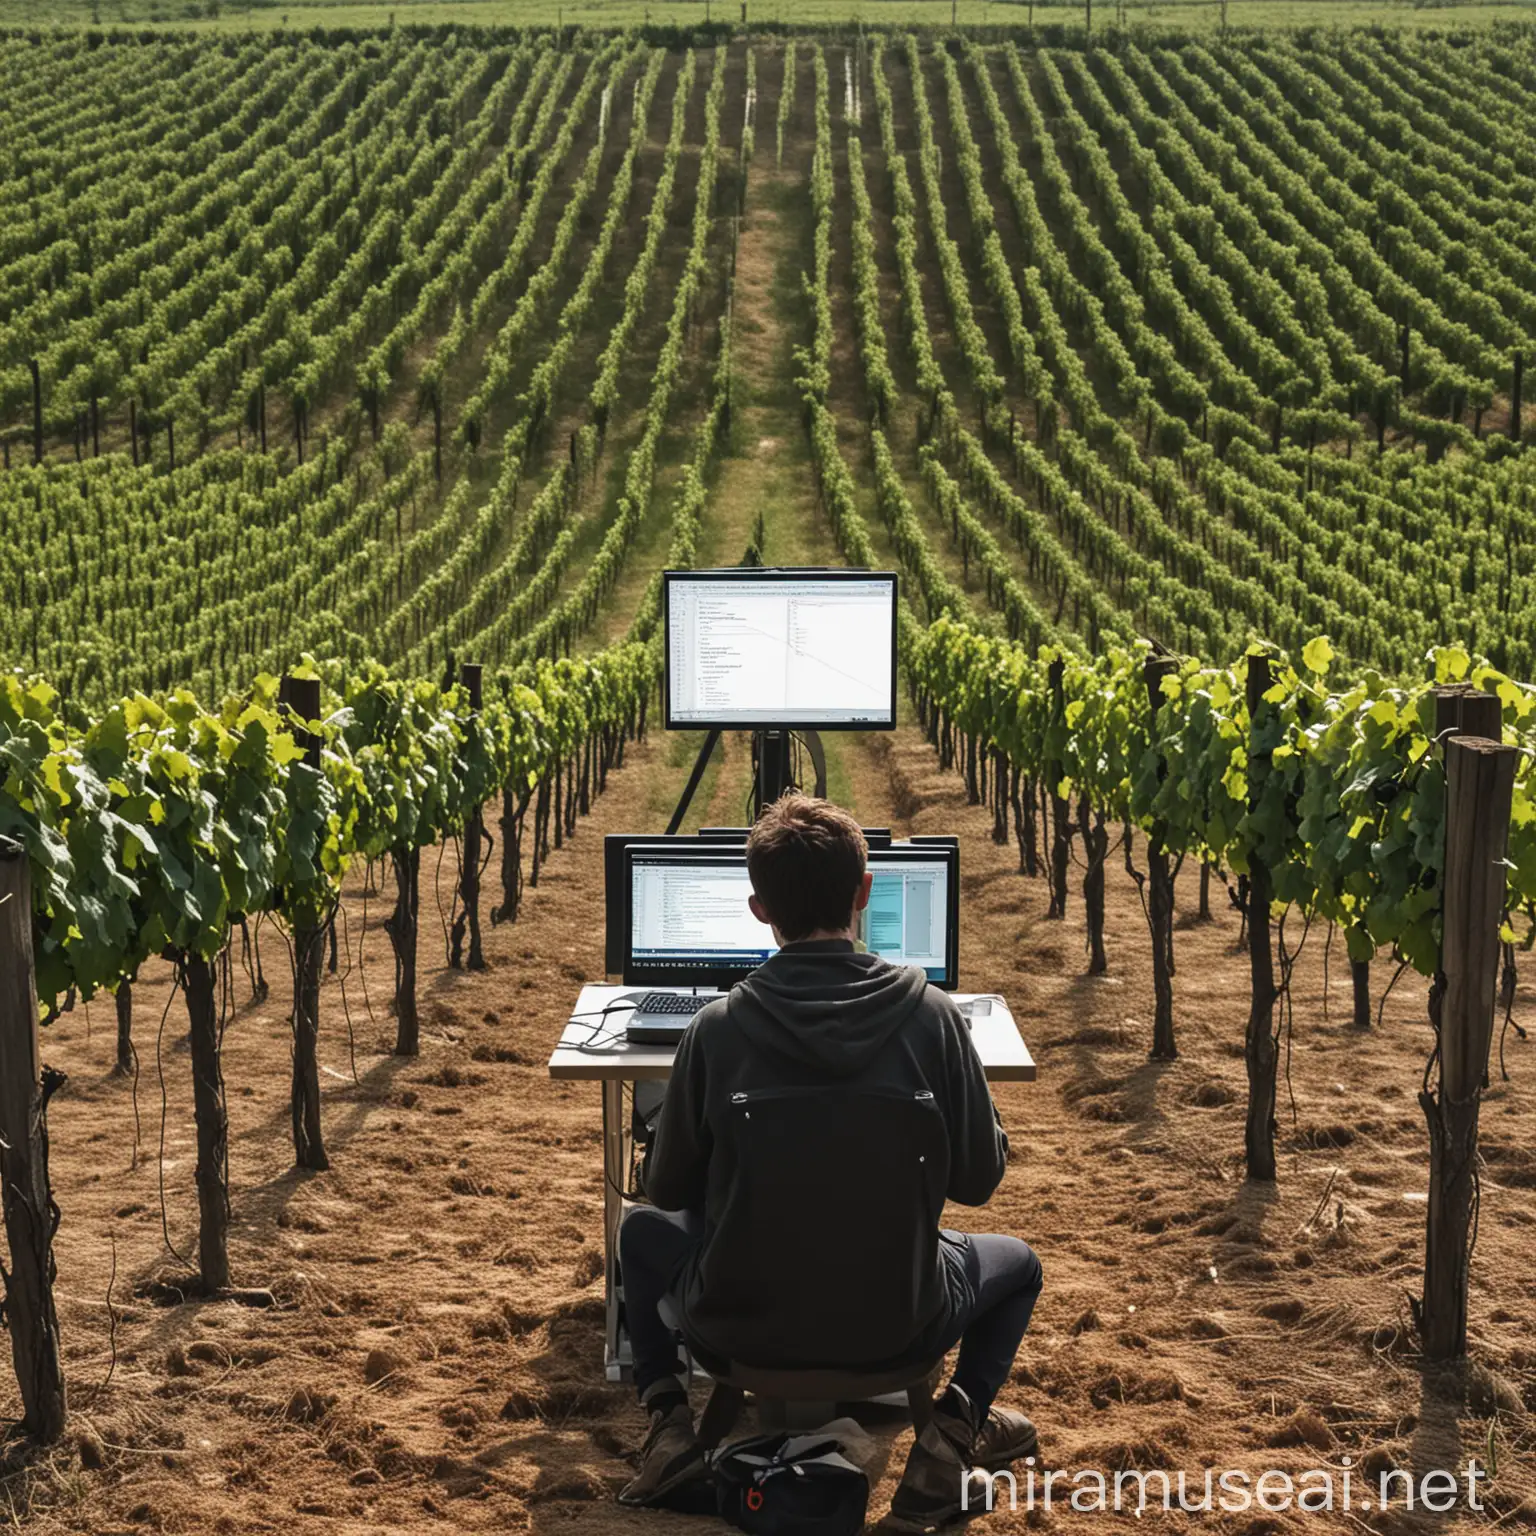 Programmer Coding in Vineyard Landscape